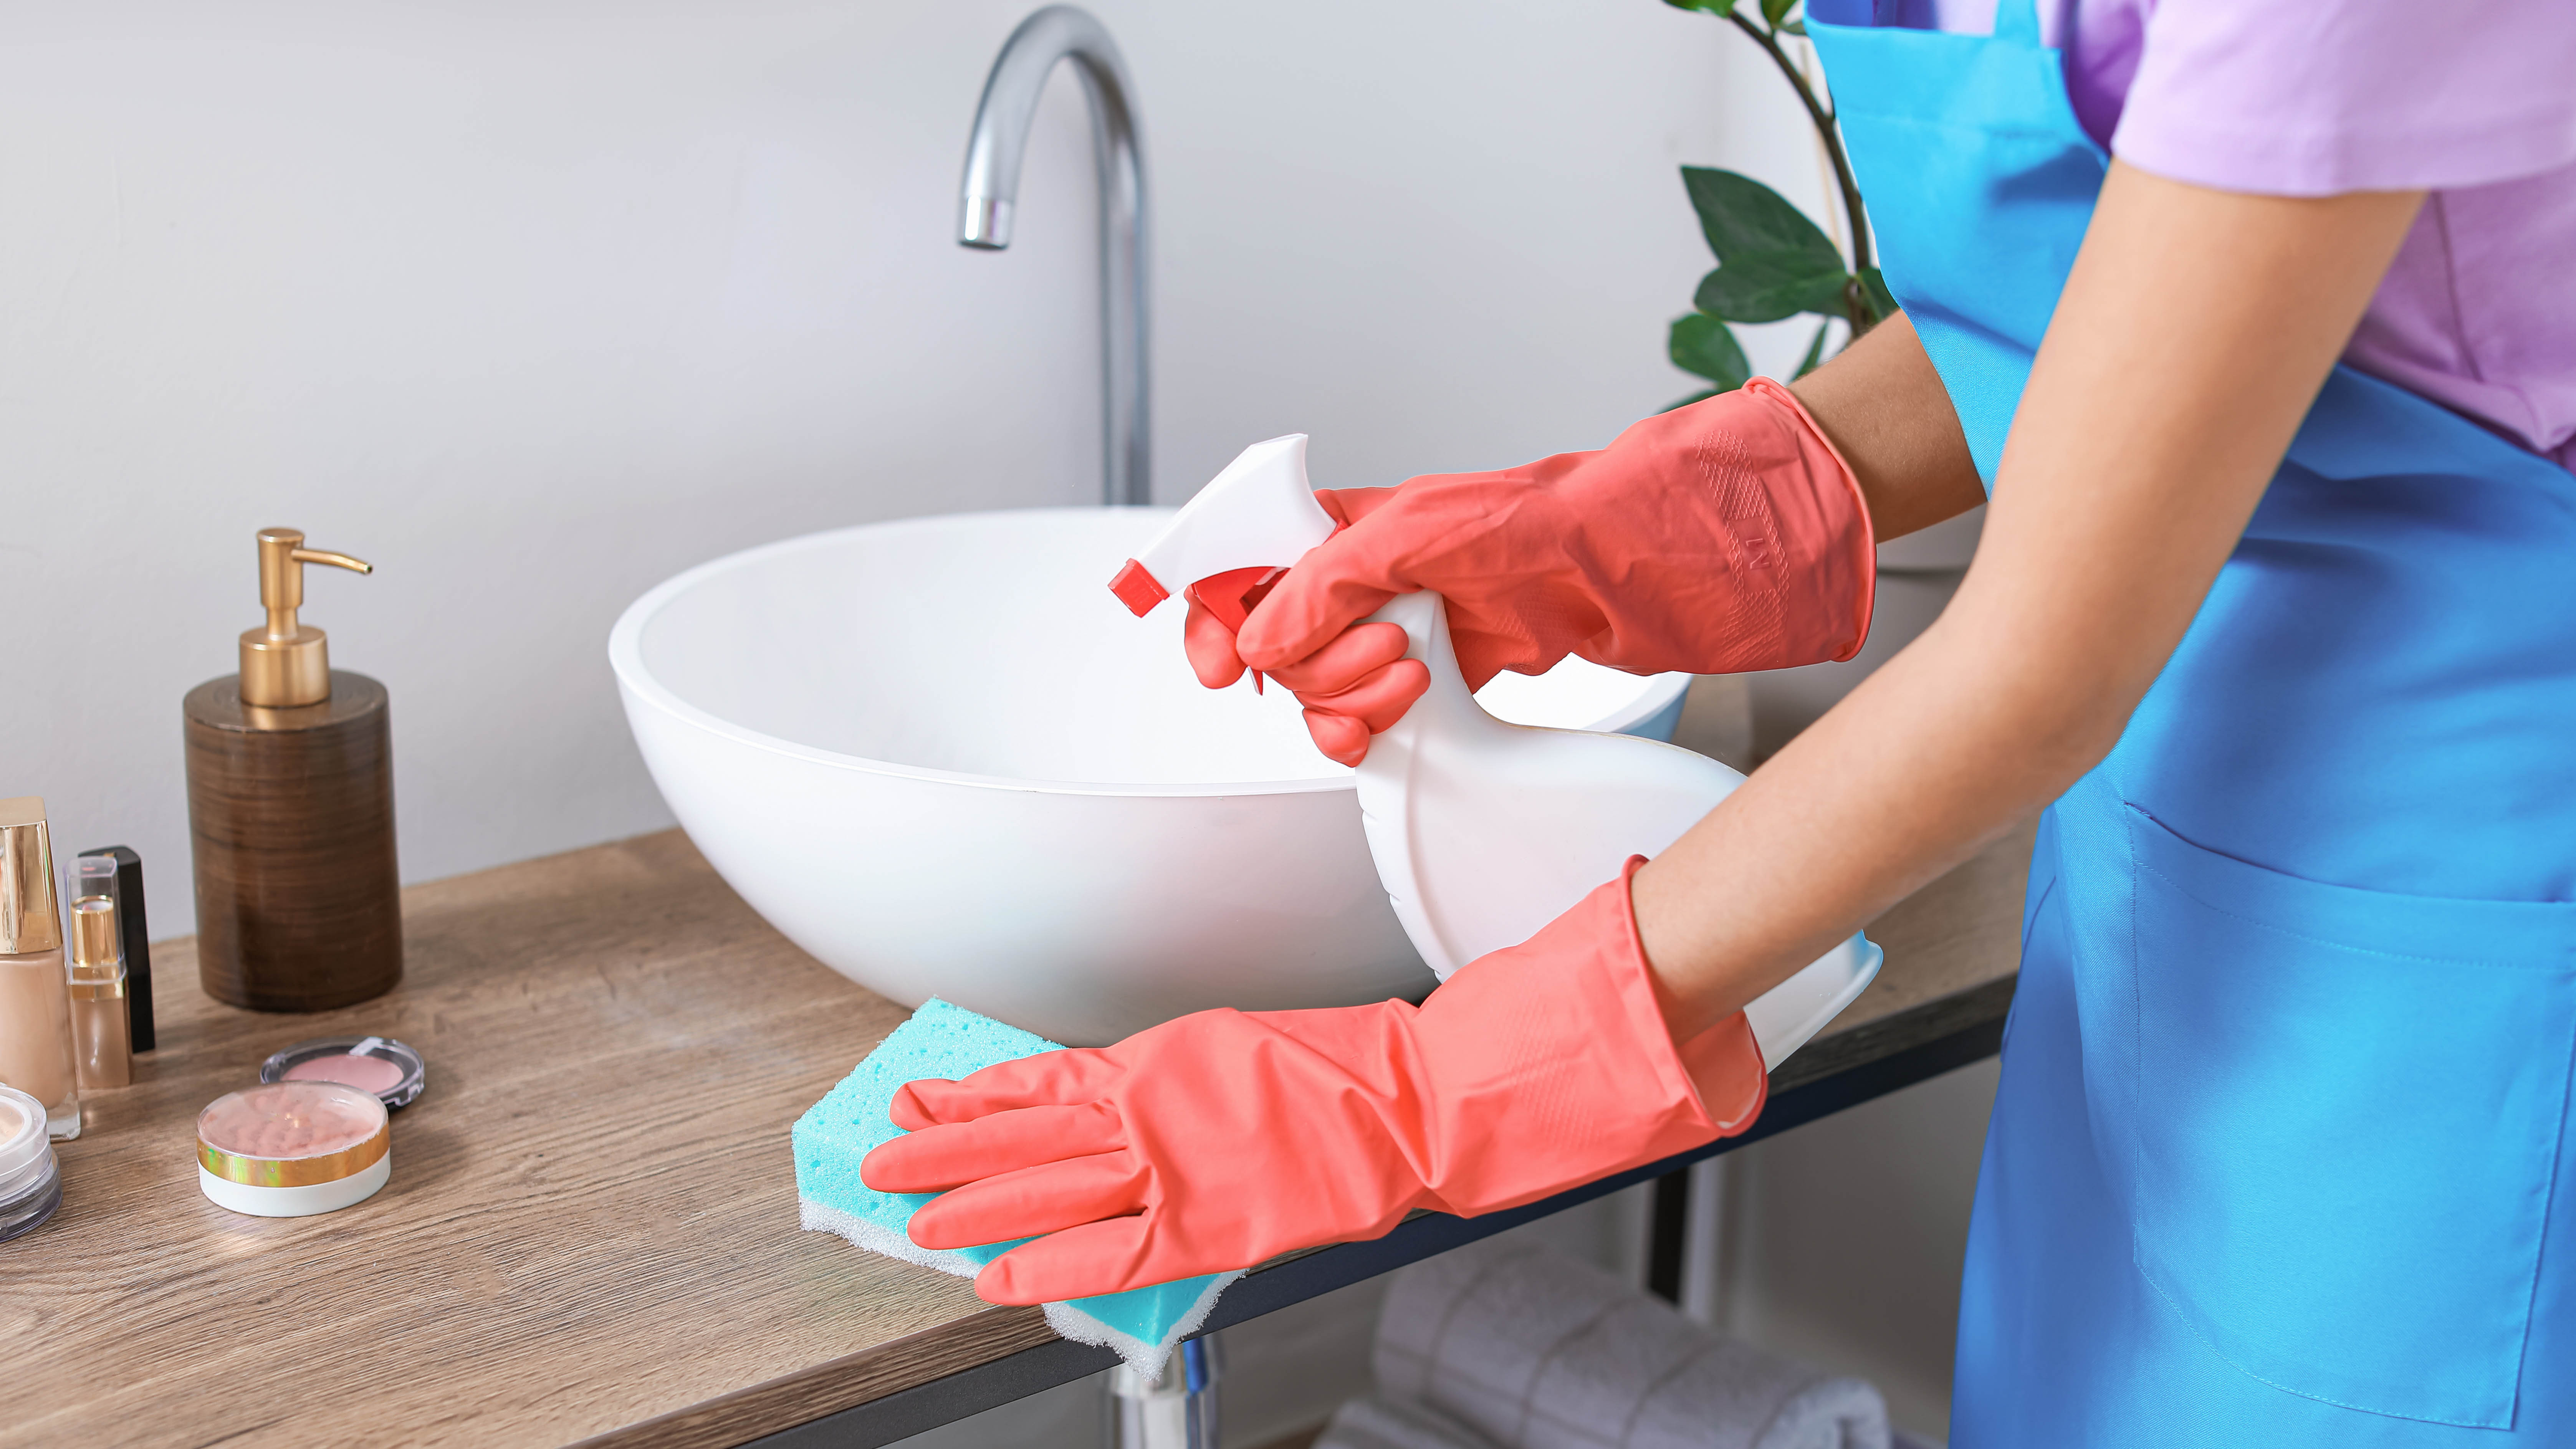 Женщина моет ванную в перчатках, используя губку и распылитель.